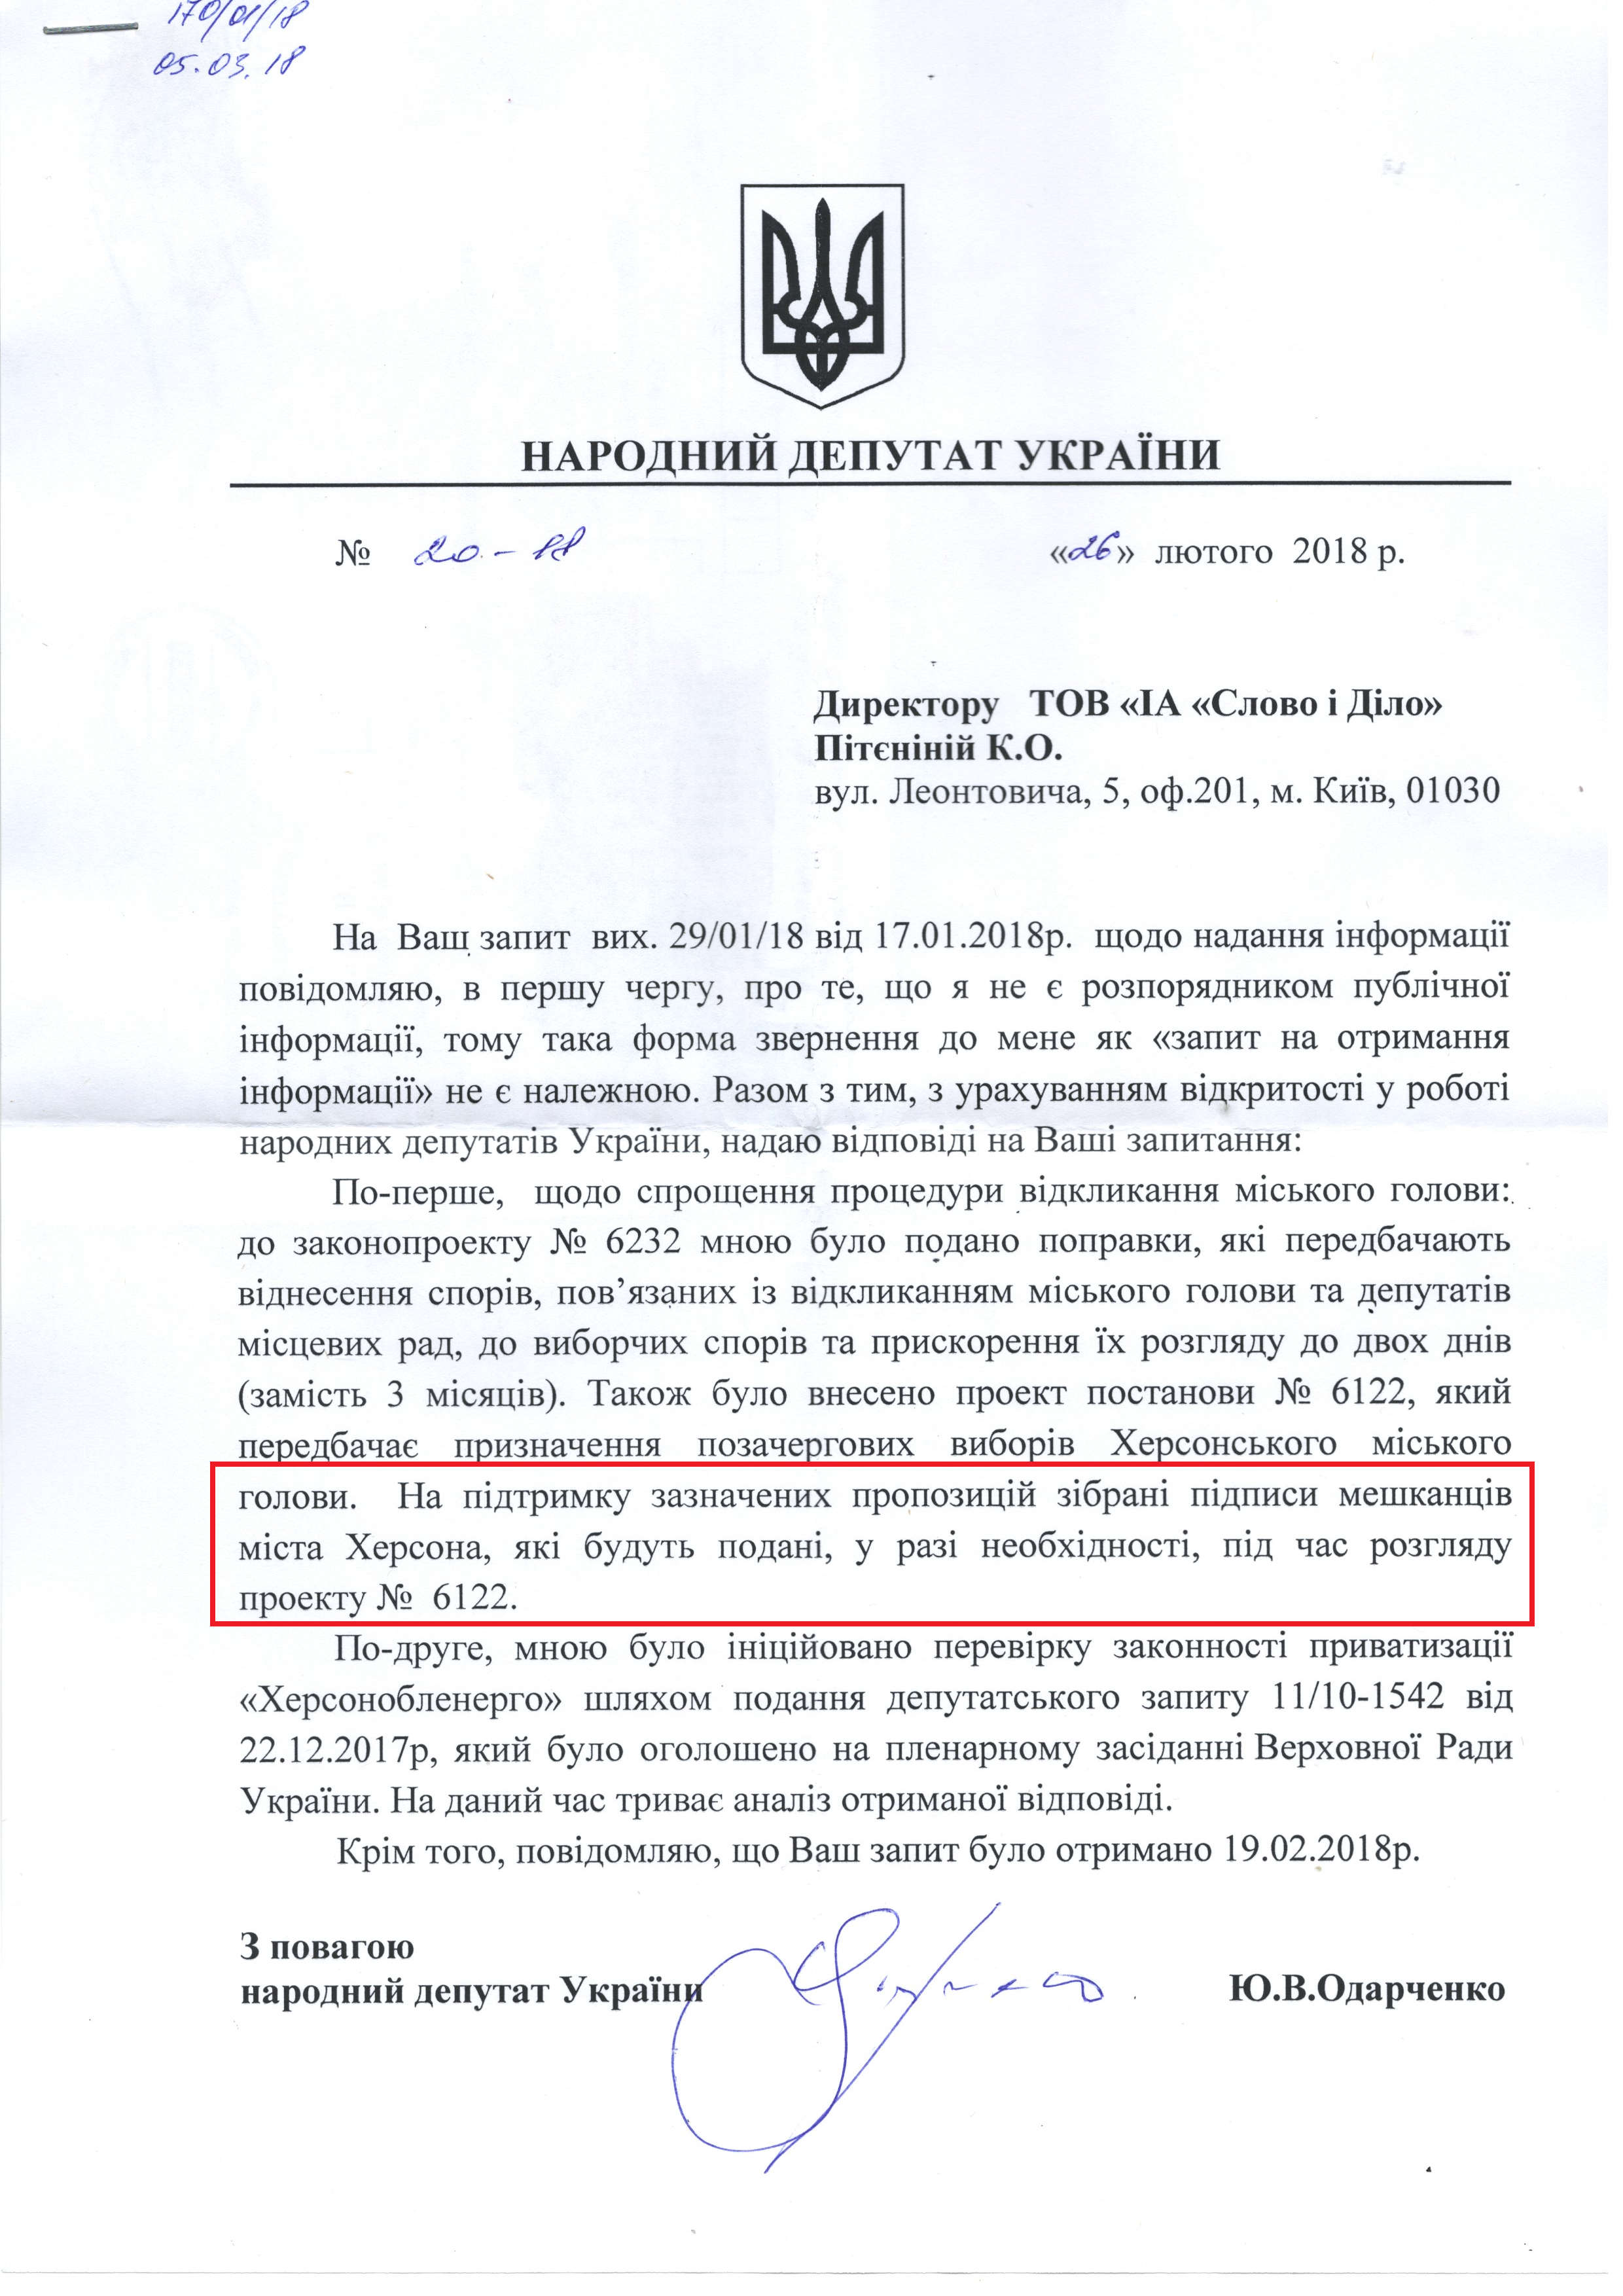 Лист від народного депутата Юрія Одарченка